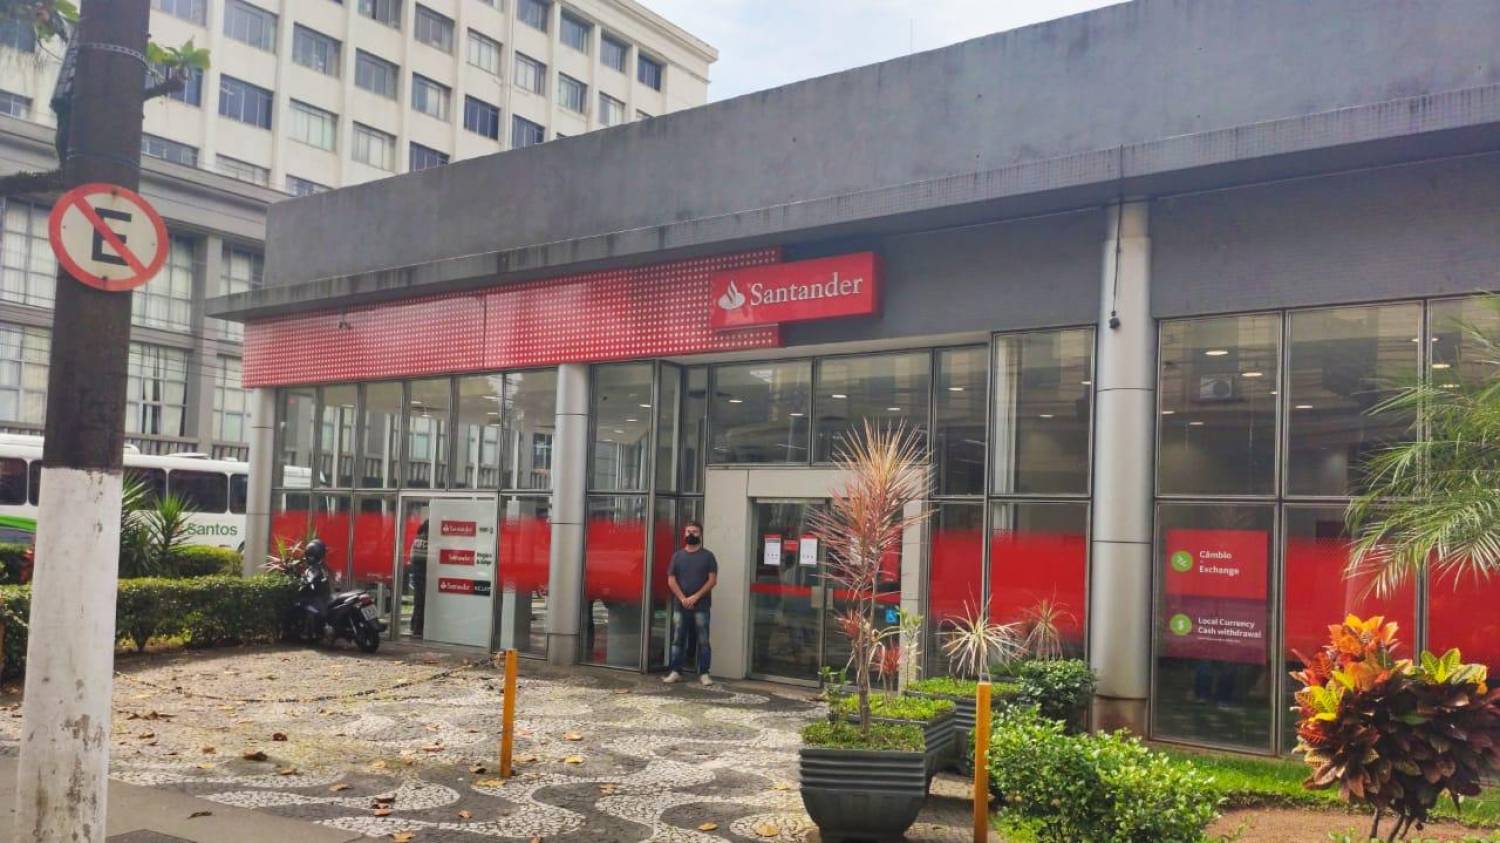 Denúncias relatam assédio, ameaças e demissões no Santander